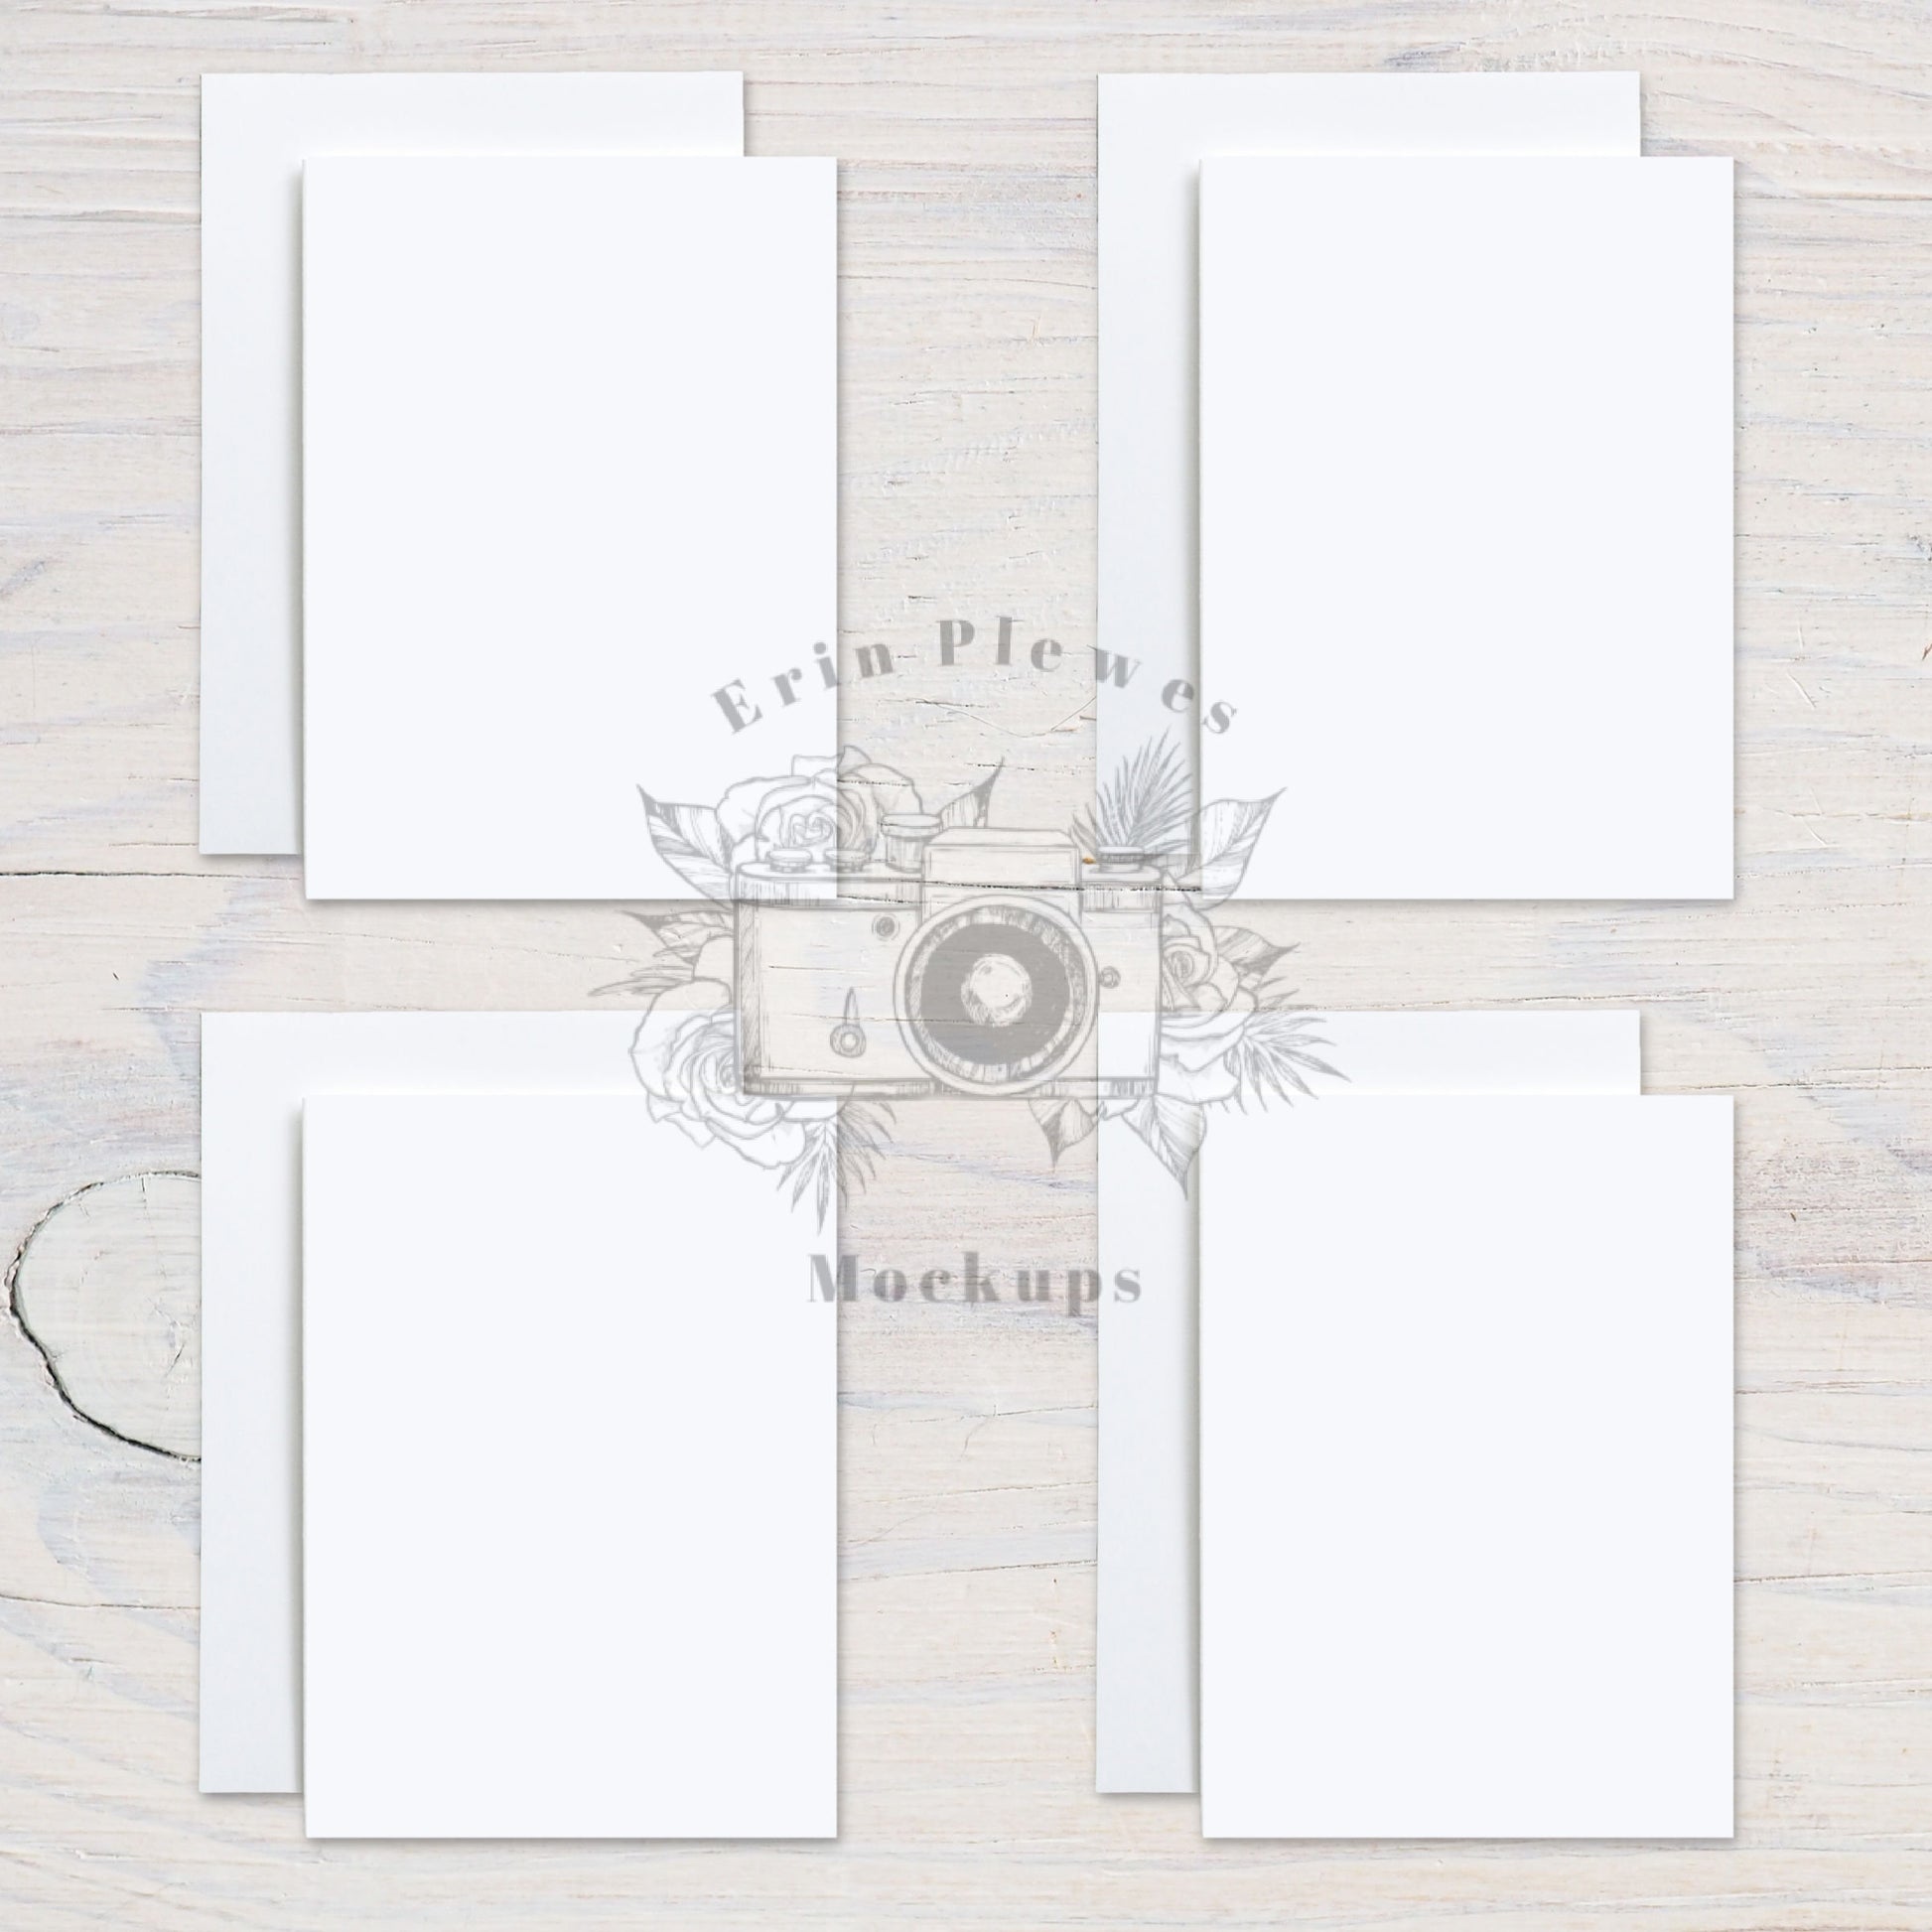 5x7 Card Mockup with Envelopes, Front Back Greeting Card Mock Up, Stationery Suite Mock Ups, Jpeg Instant Digital Download